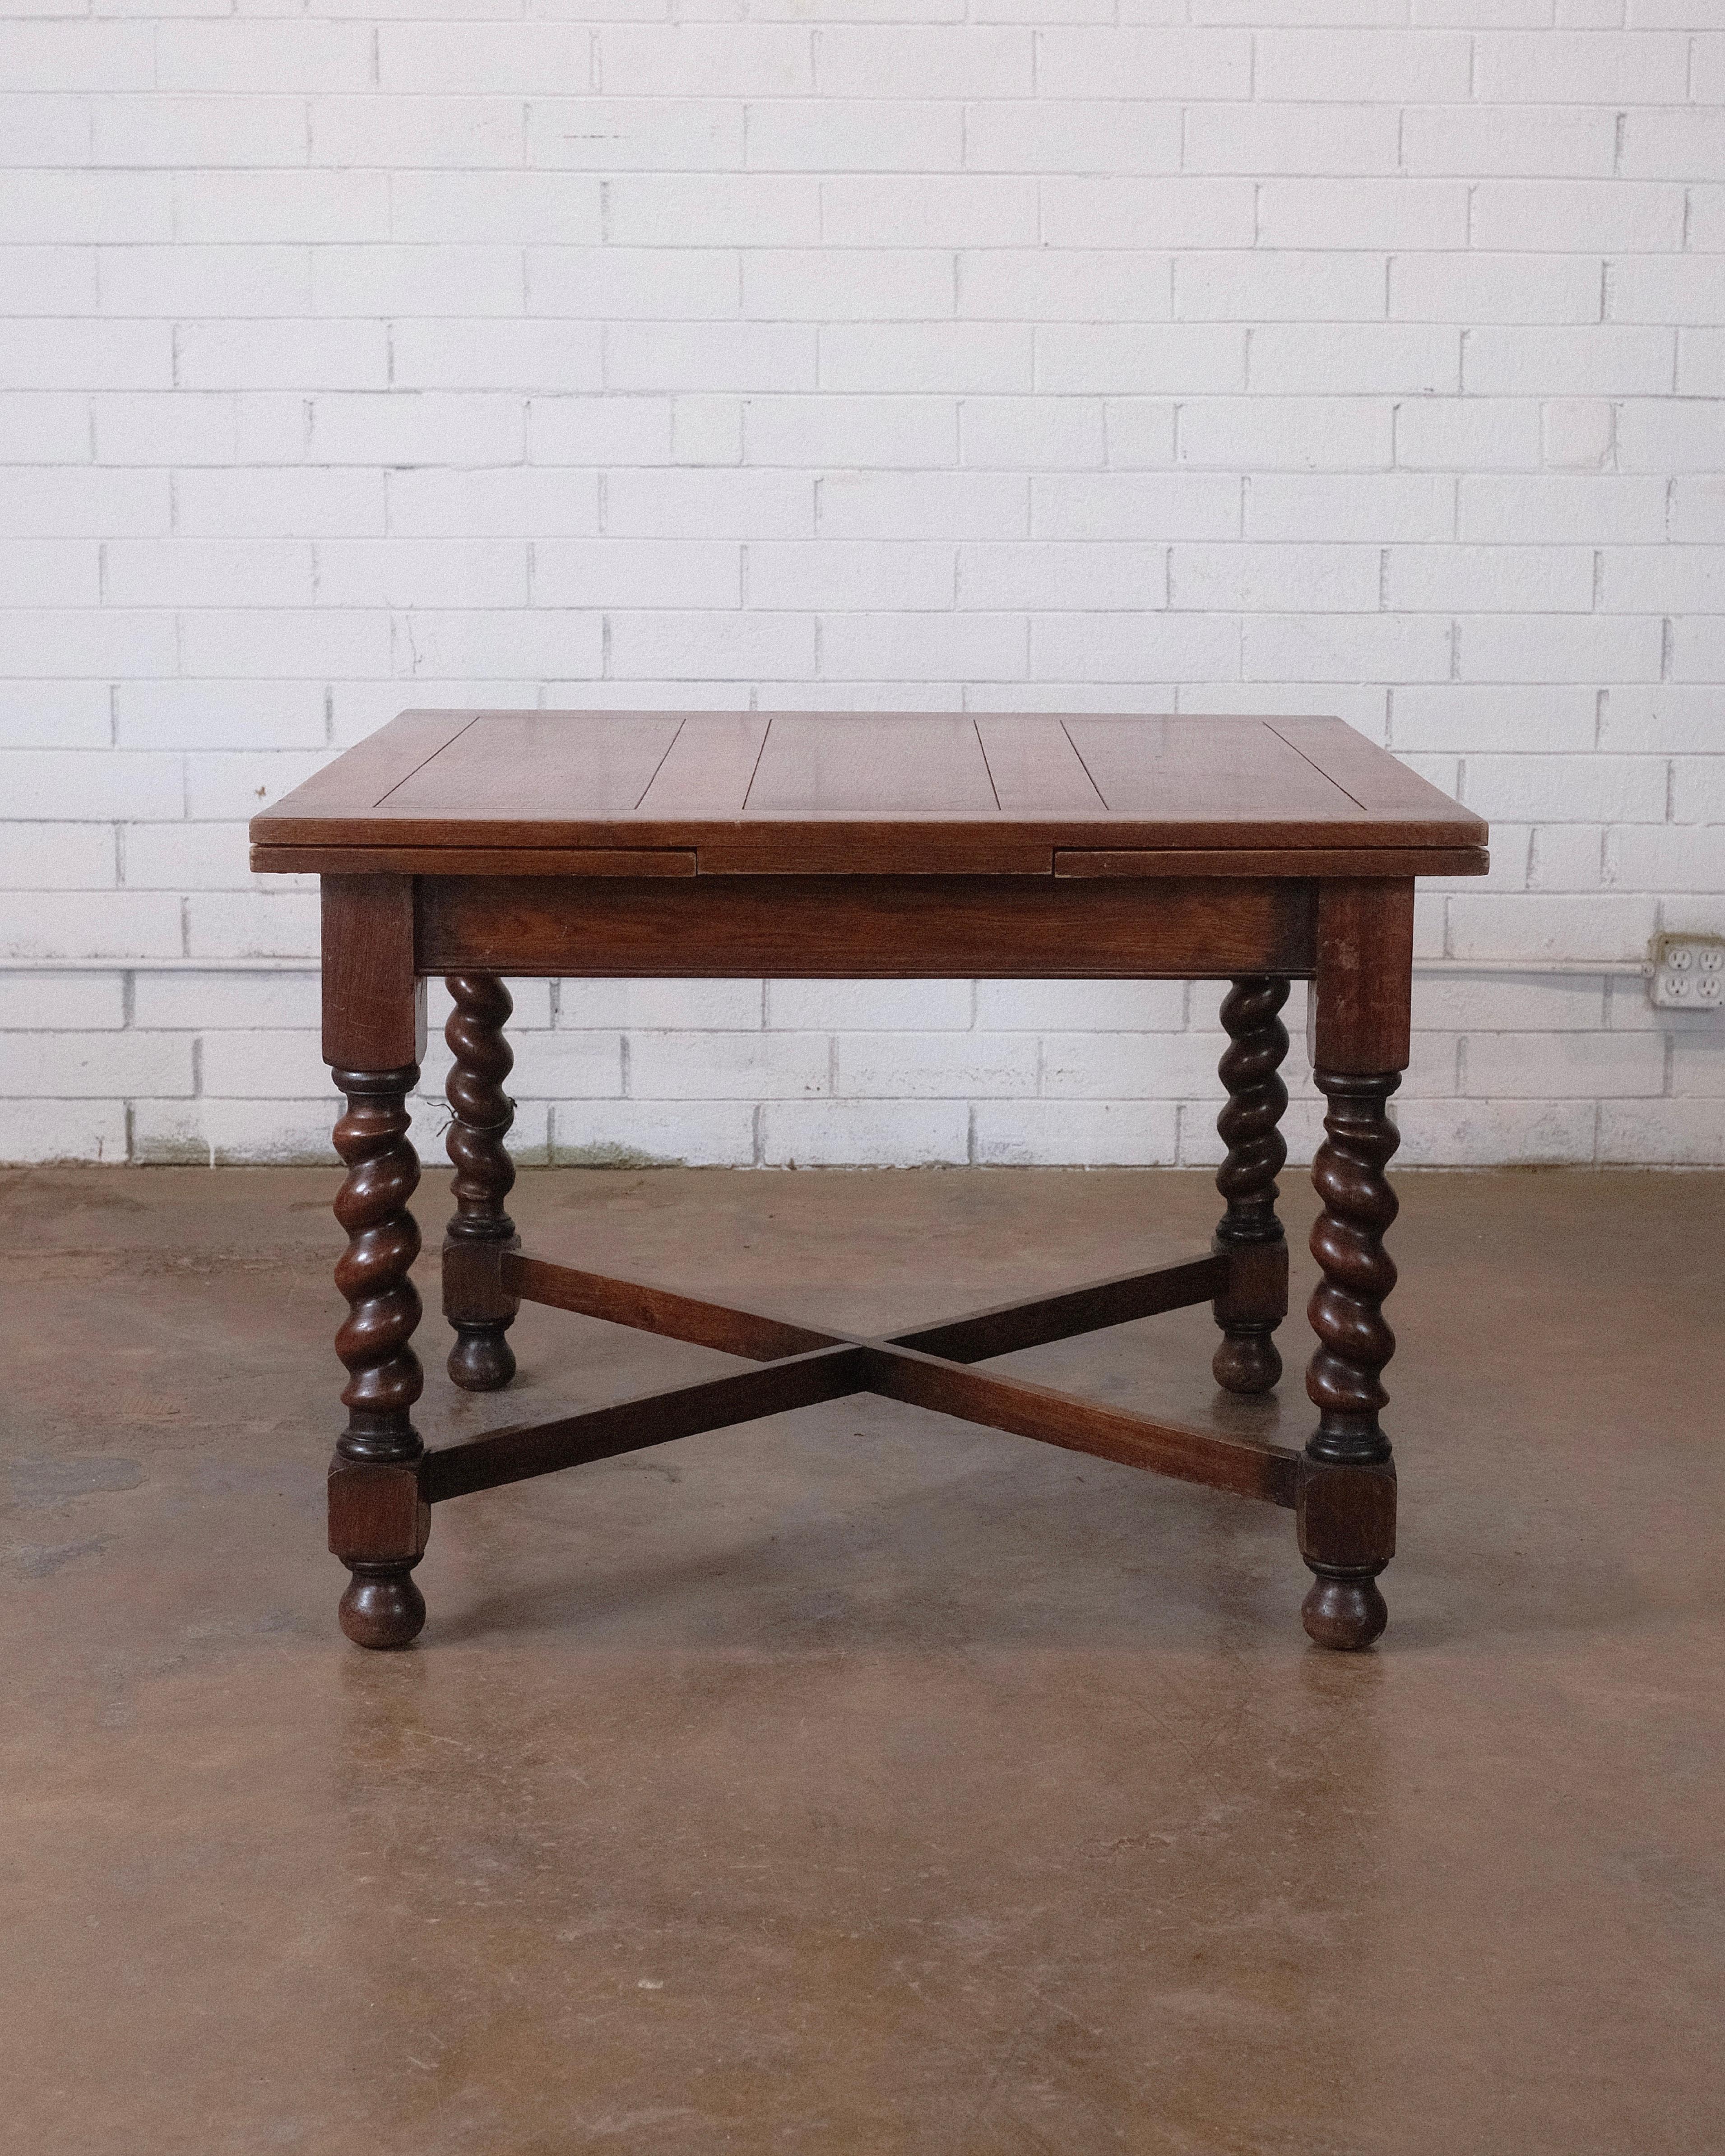 Wir präsentieren einen edwardianischen Eichen-Pub-Tisch aus der Zeit um 1900, mit praktischen Ausziehplatten für anpassungsfähige Sitzgelegenheiten. Das Oberteil und die Blätter weisen getäfelte Details auf, die von einer geradlinigen Schürze